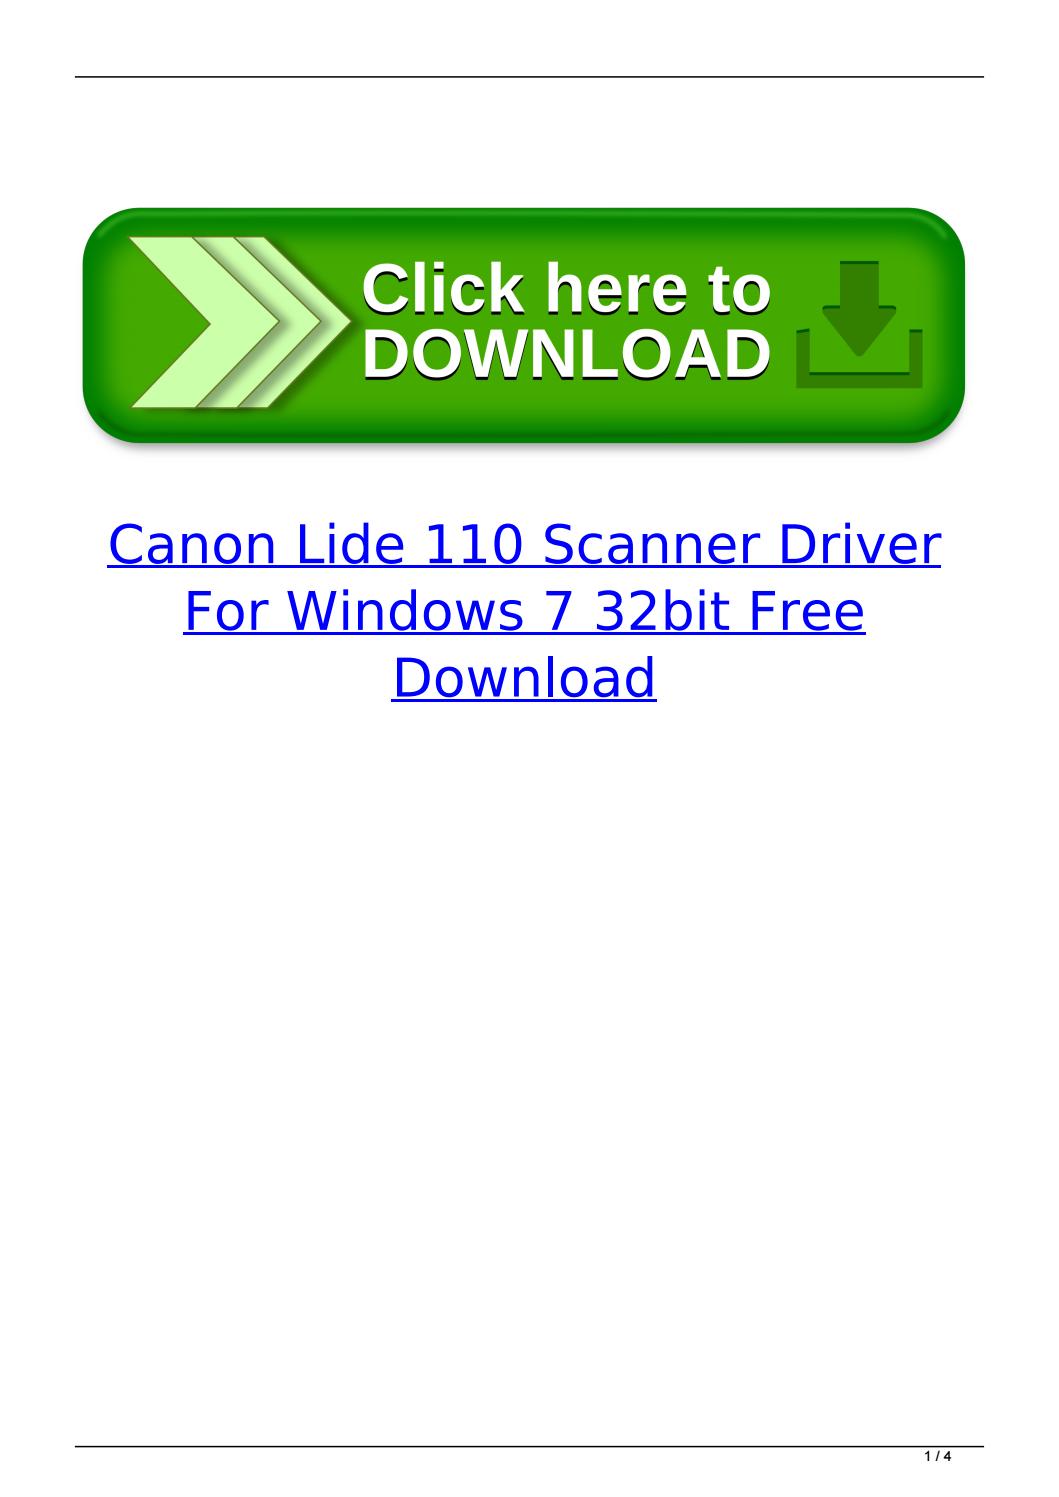 canon lide 110 driver 32 bit